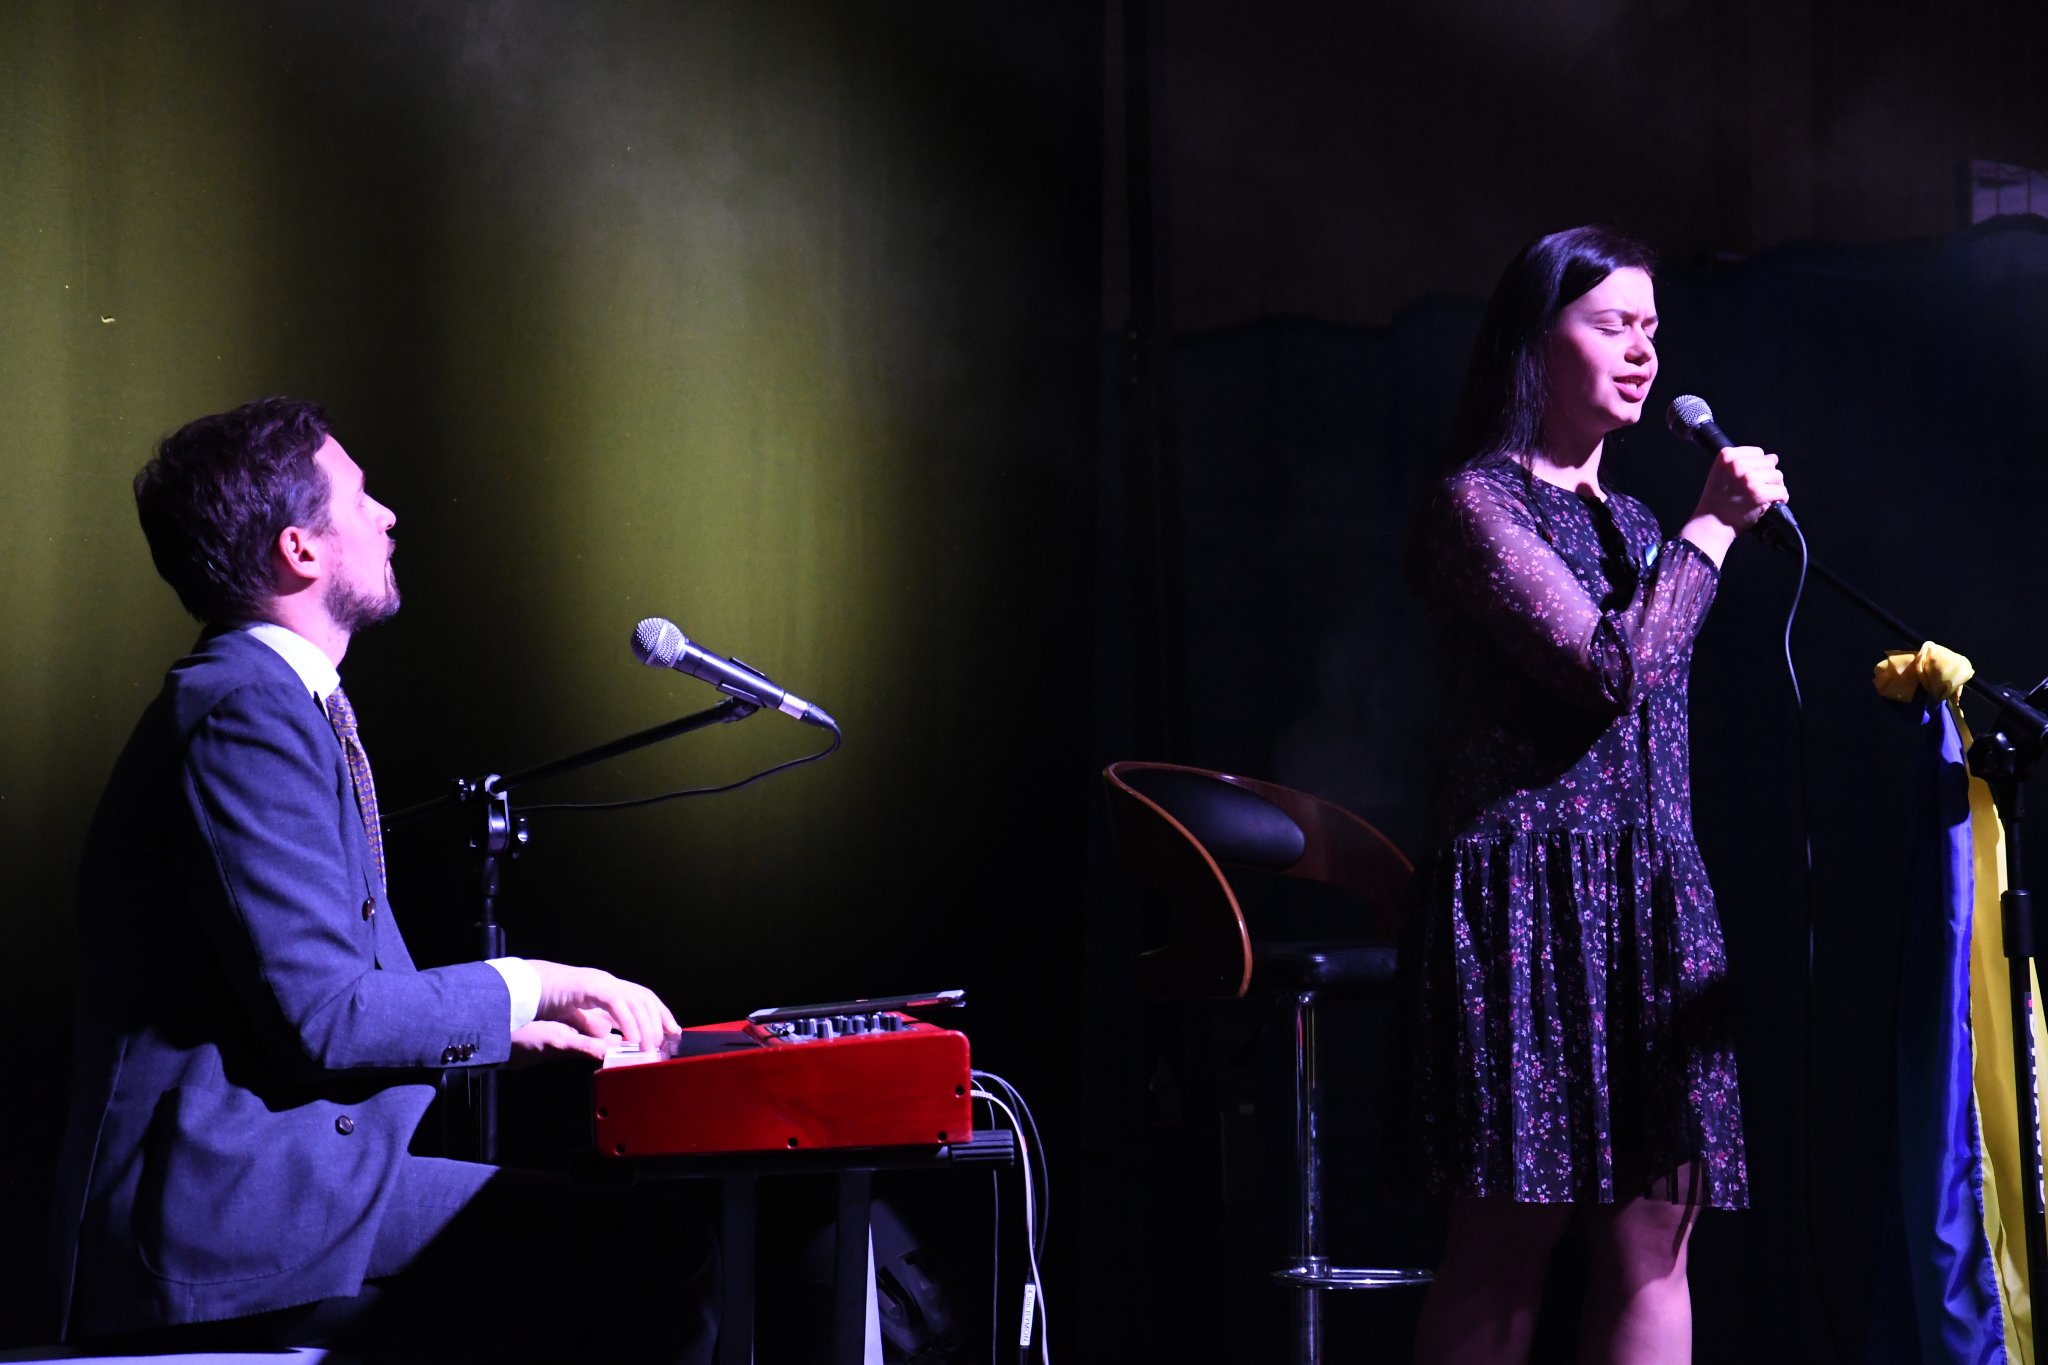 Na scenie widoczne są dwie osoby - wokalistka stojąca przy mikrofonie i po lewej stronie pianista. Wokalistka podczas robienia zdjęcia wykonywała utwór ukraiński. Zdjęcie zrobione z prawej strony.